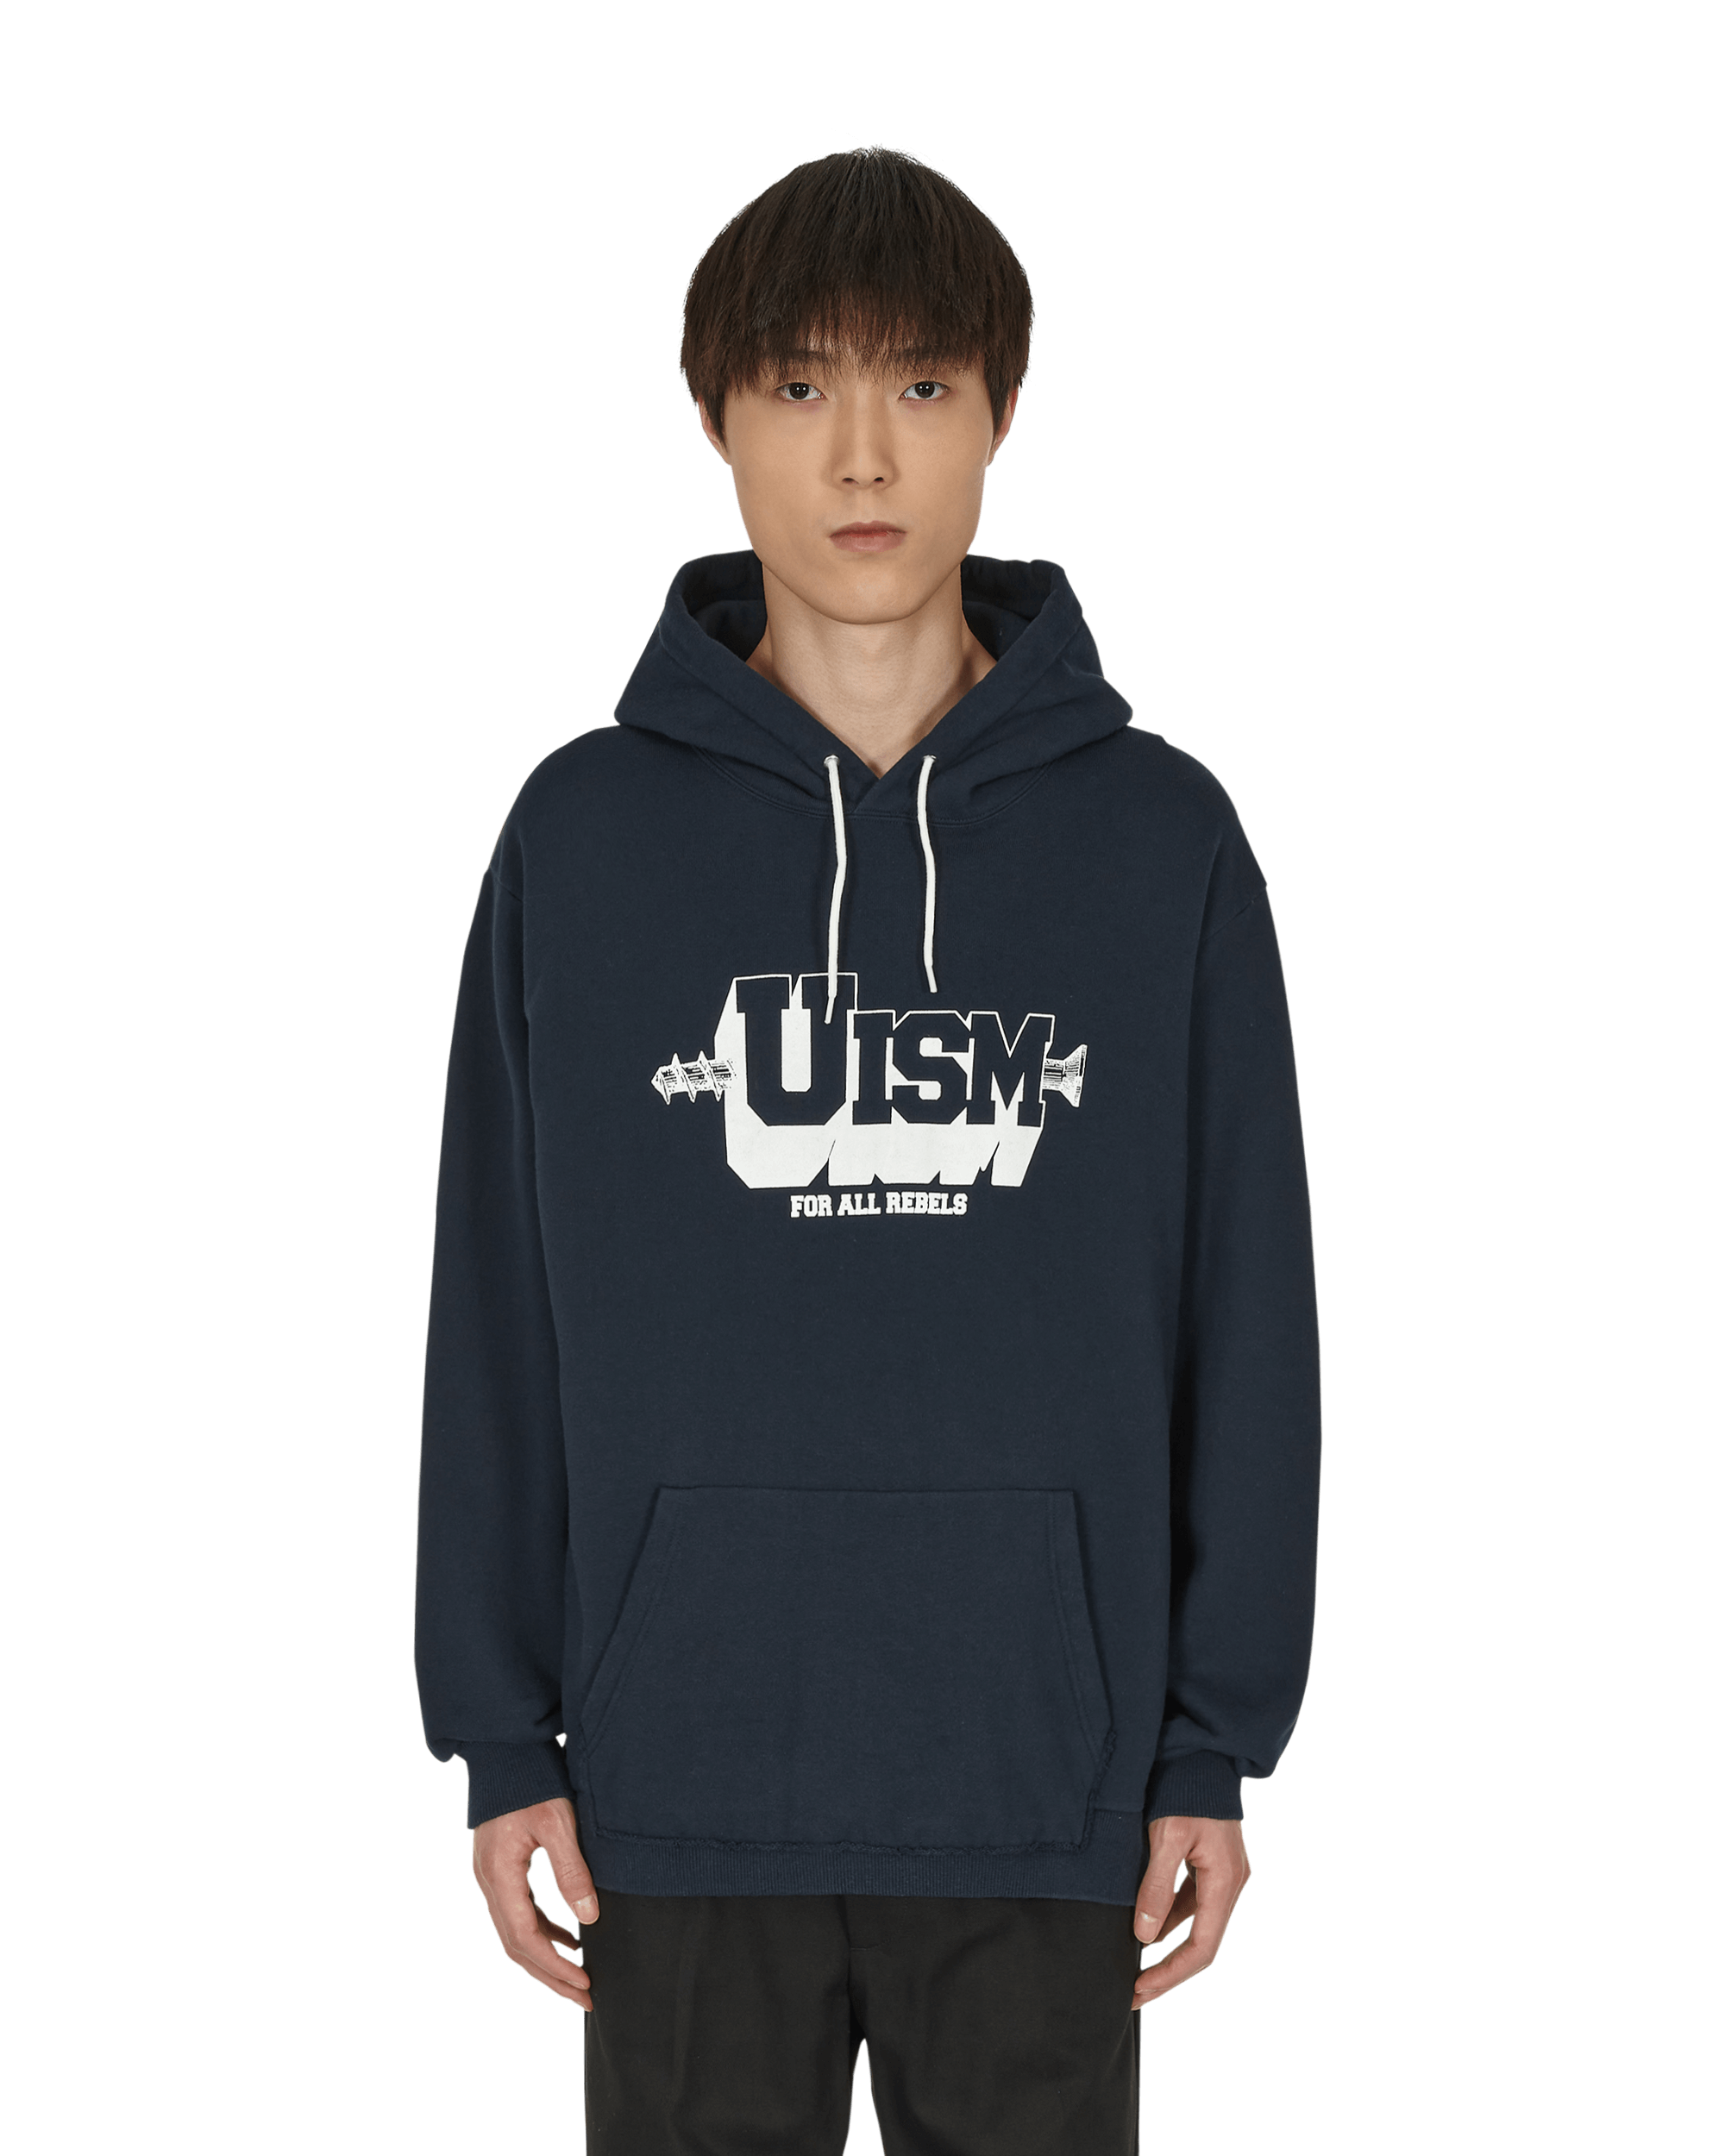 Undercoverism Hoody Navy Sweatshirts Hoodies UI1B4802 NAVY